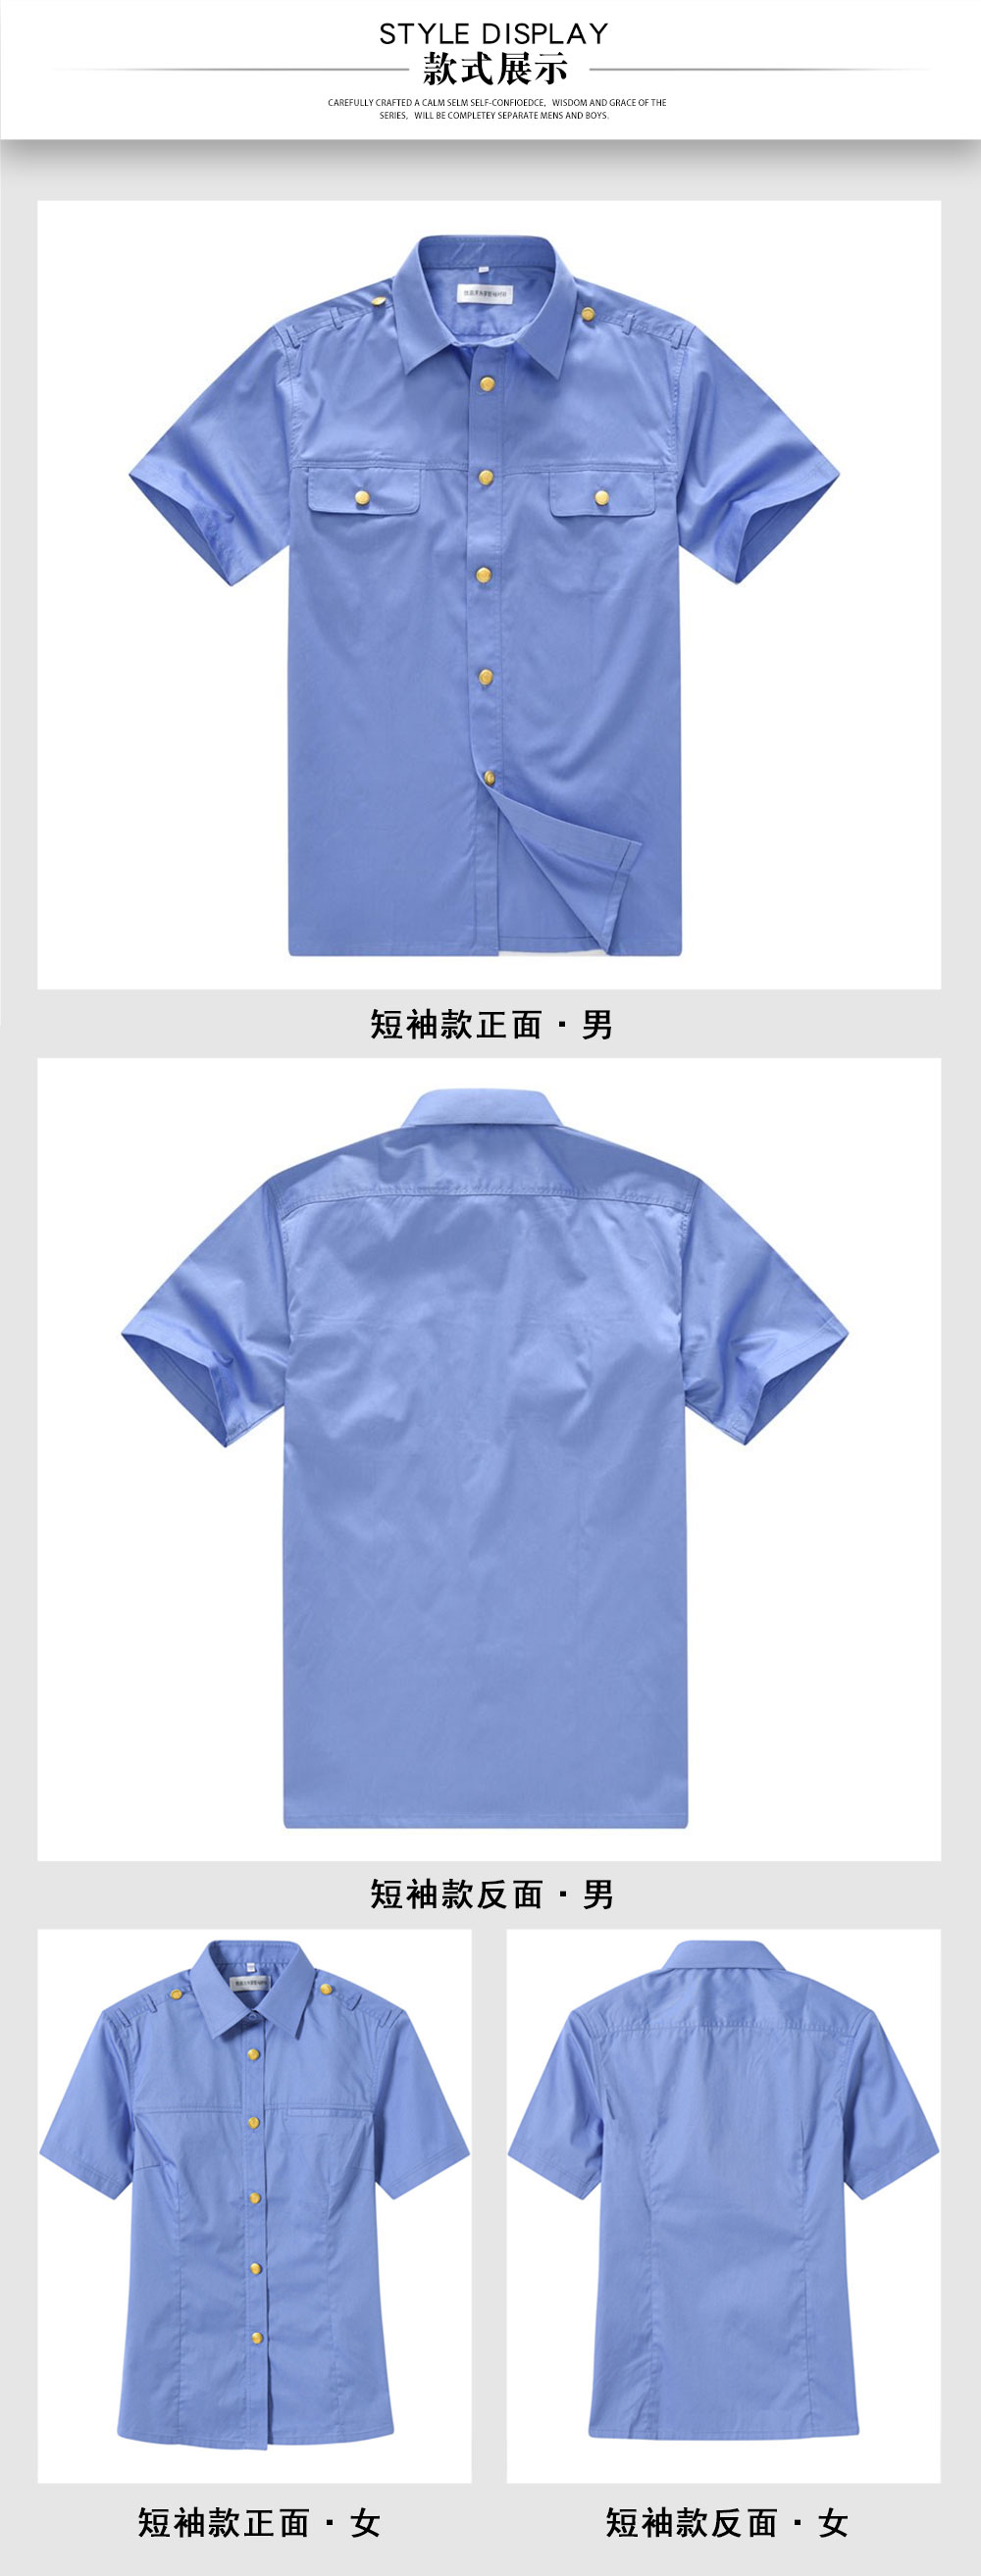 短袖铁路制服衬衫—款式图片